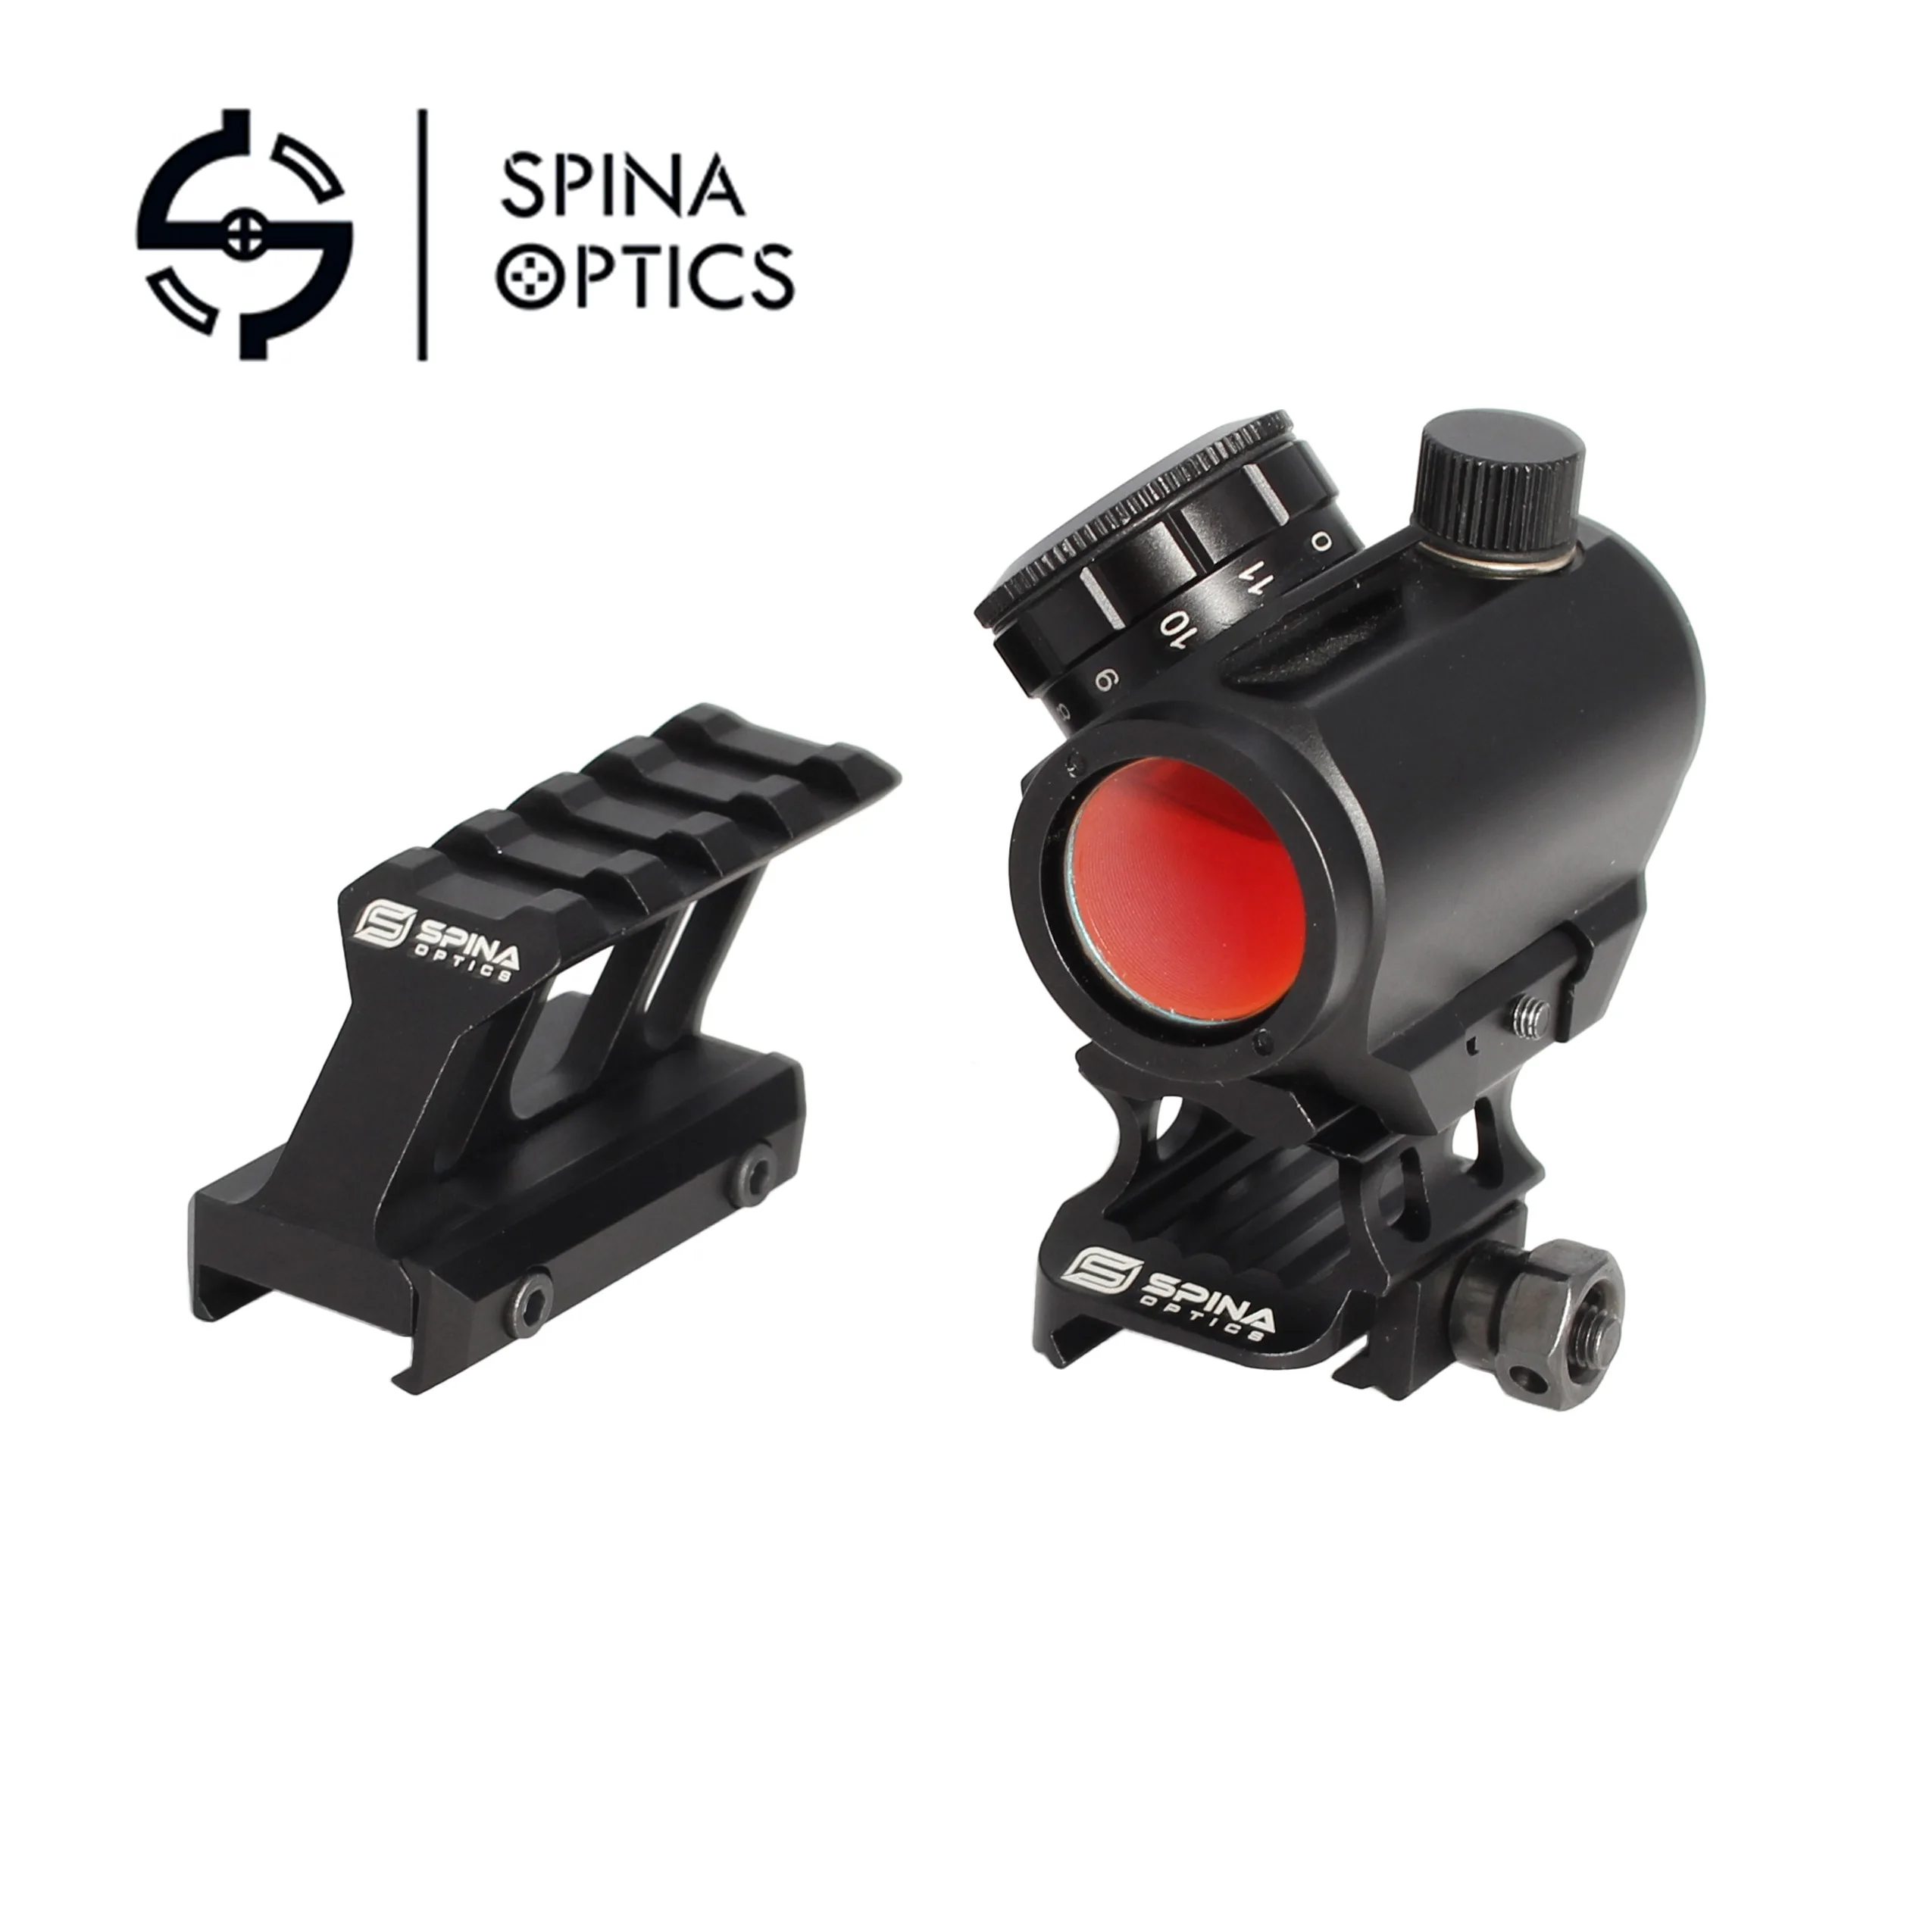 SPINA оптика голографический красный точечный прицел рефлекторный прицел противоударный тактический прицел 20 мм рельсовый прицел с переходником для крепления